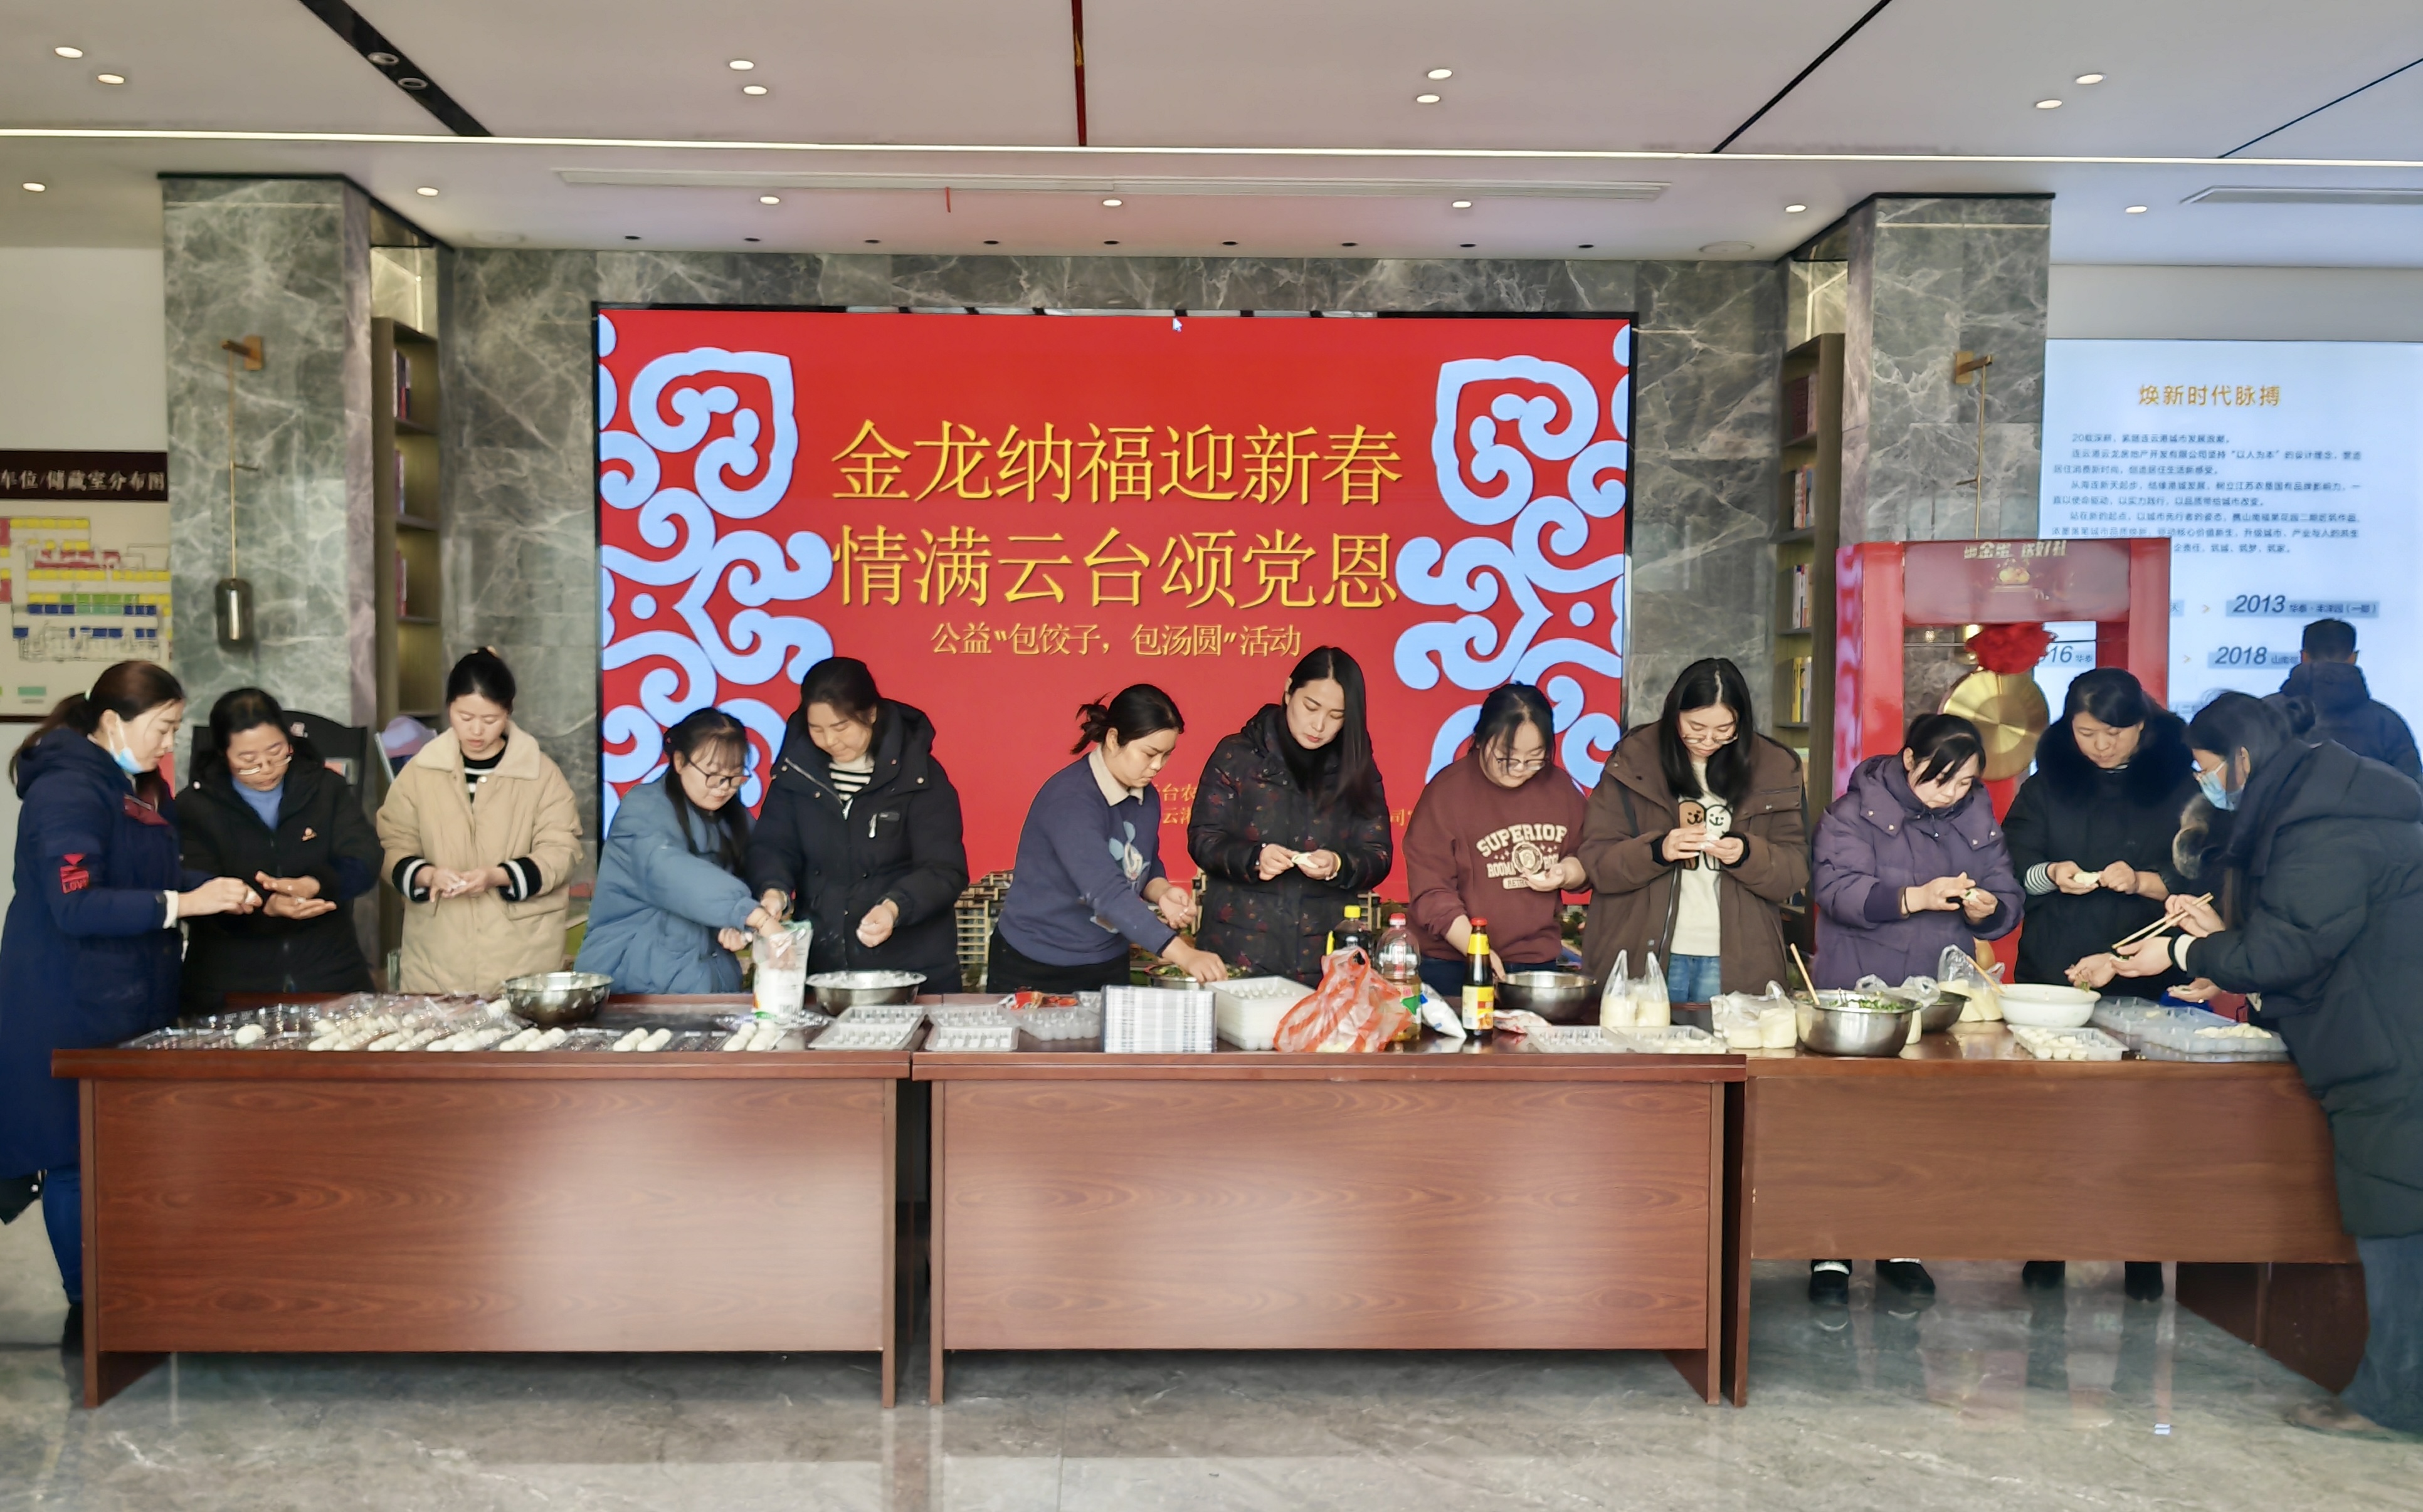 20240207 包饺子、做汤圆……社区欢乐迎新年 (2).jpg